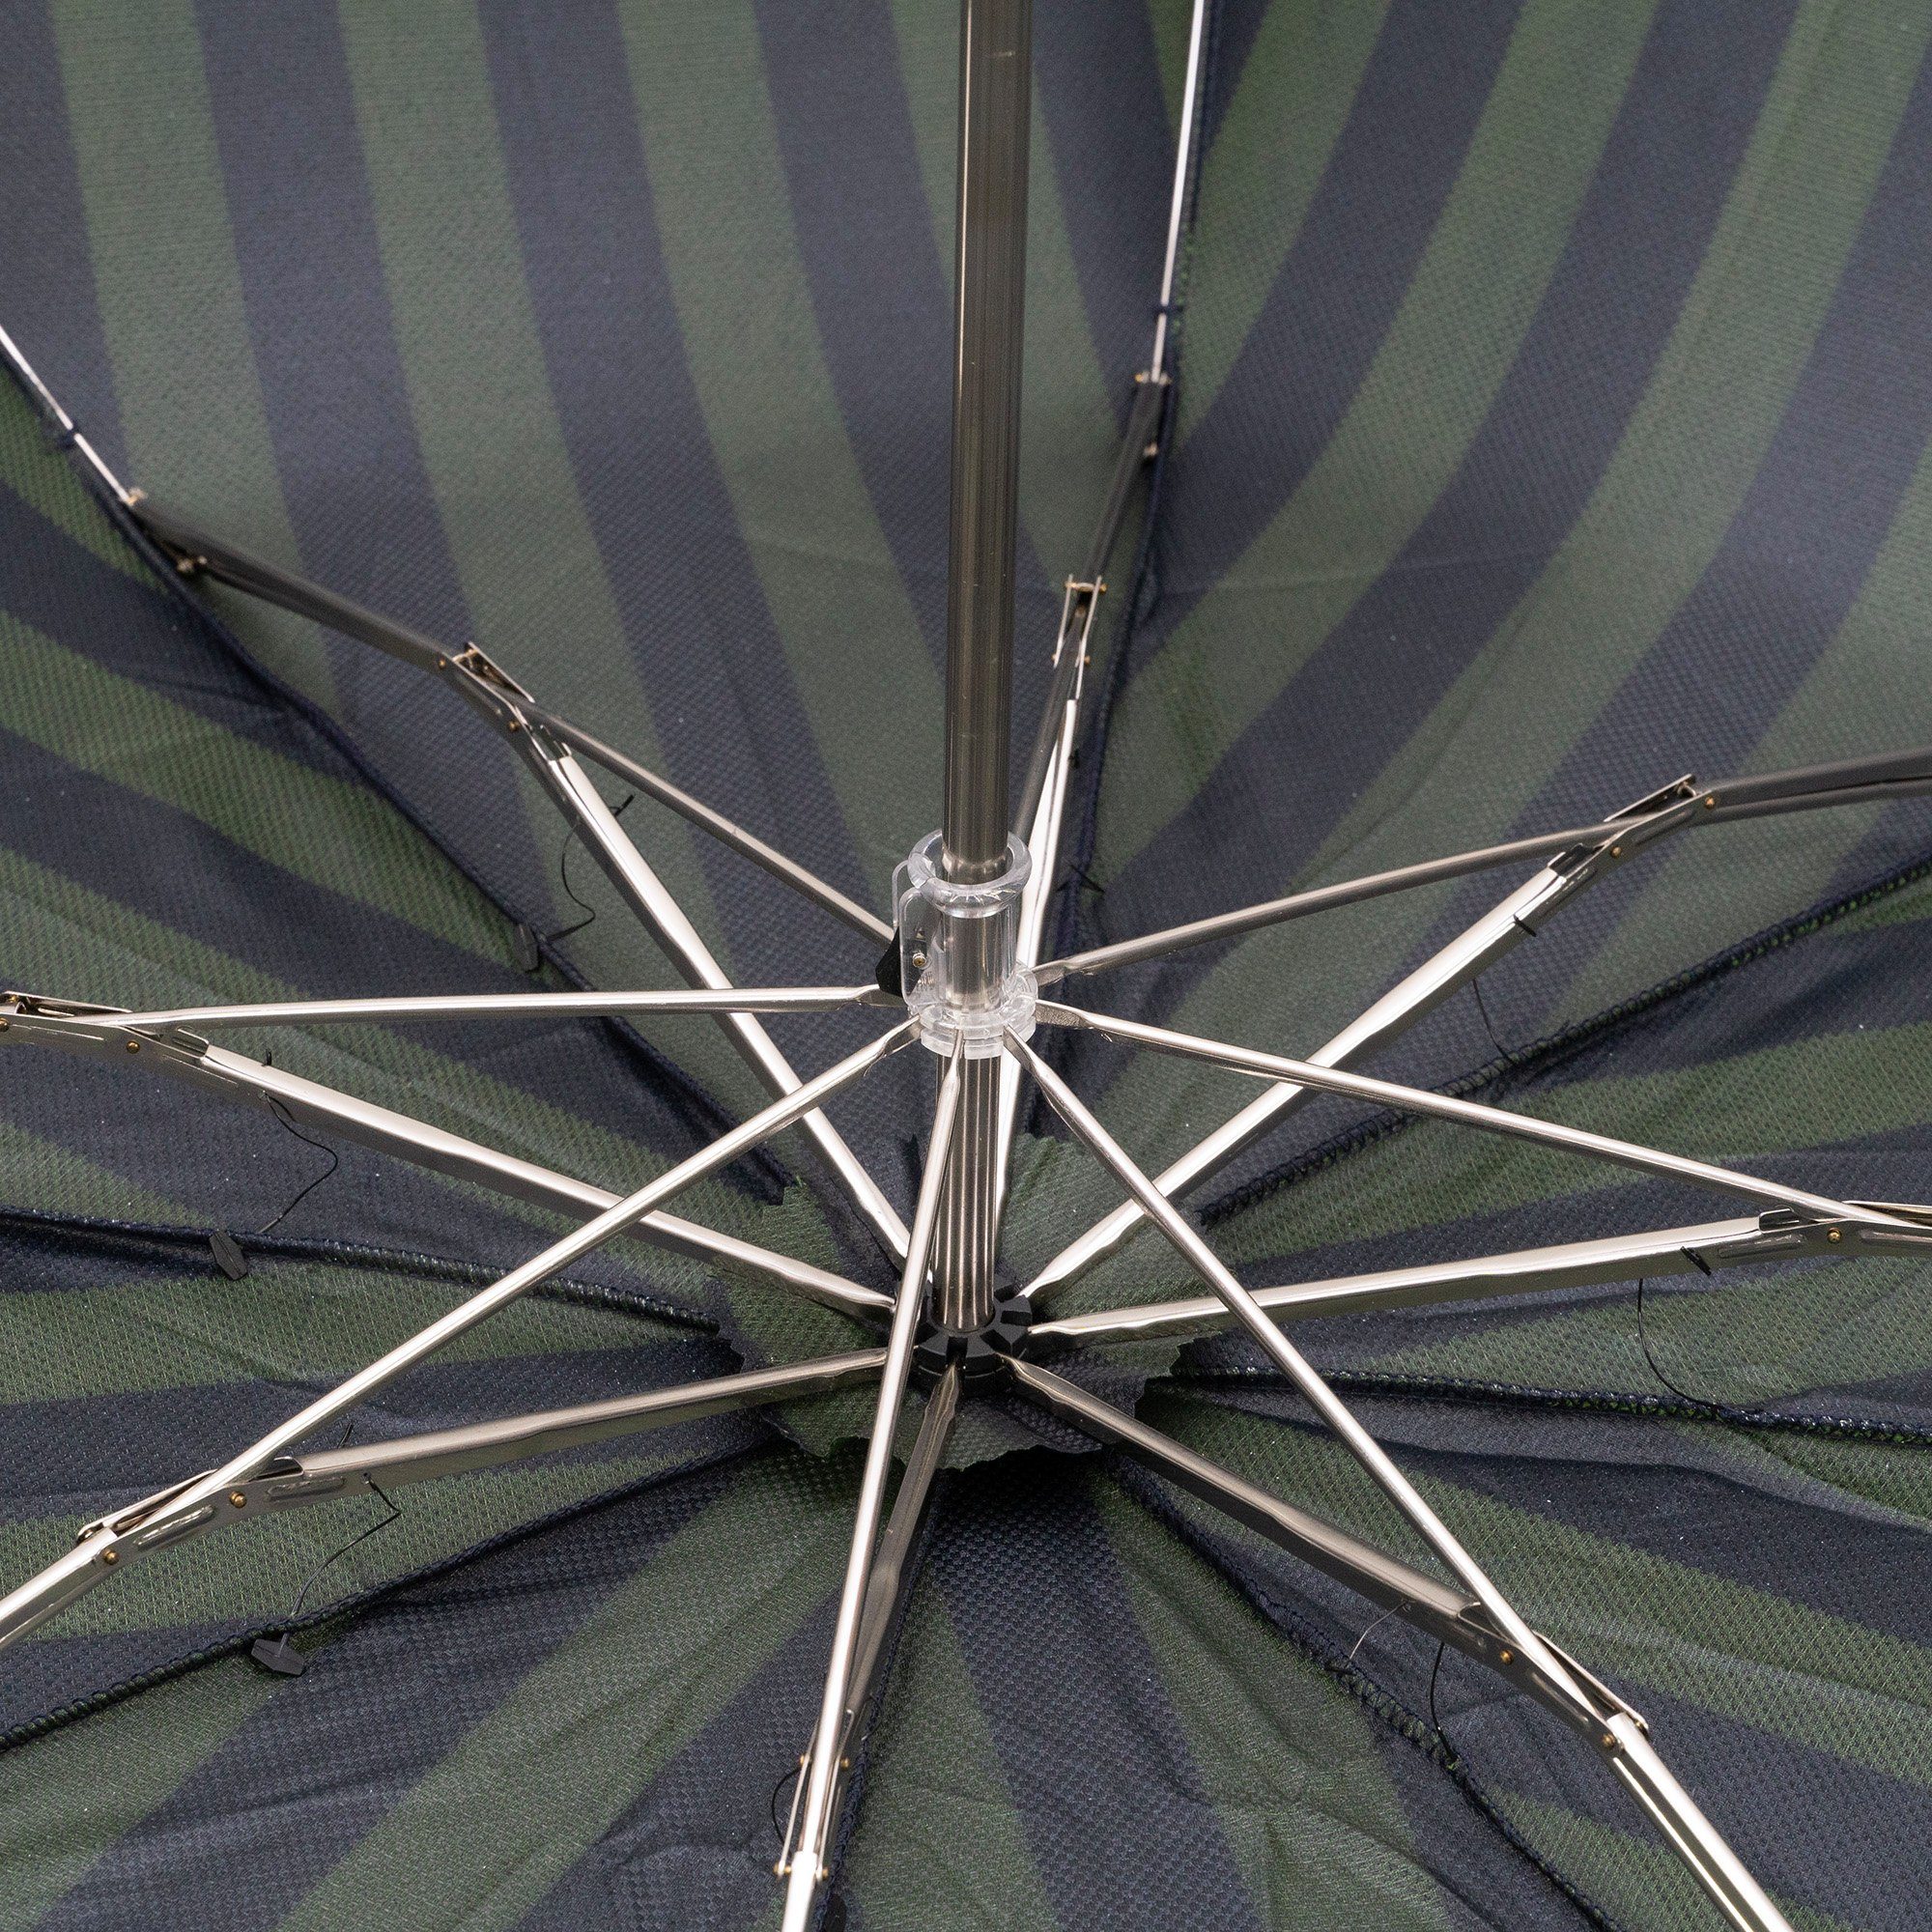 Francesco Holzgriff, in Maglia Handmade Taschenregenschirm, gestreift, Luxus-Regenschirm, grün, Italy